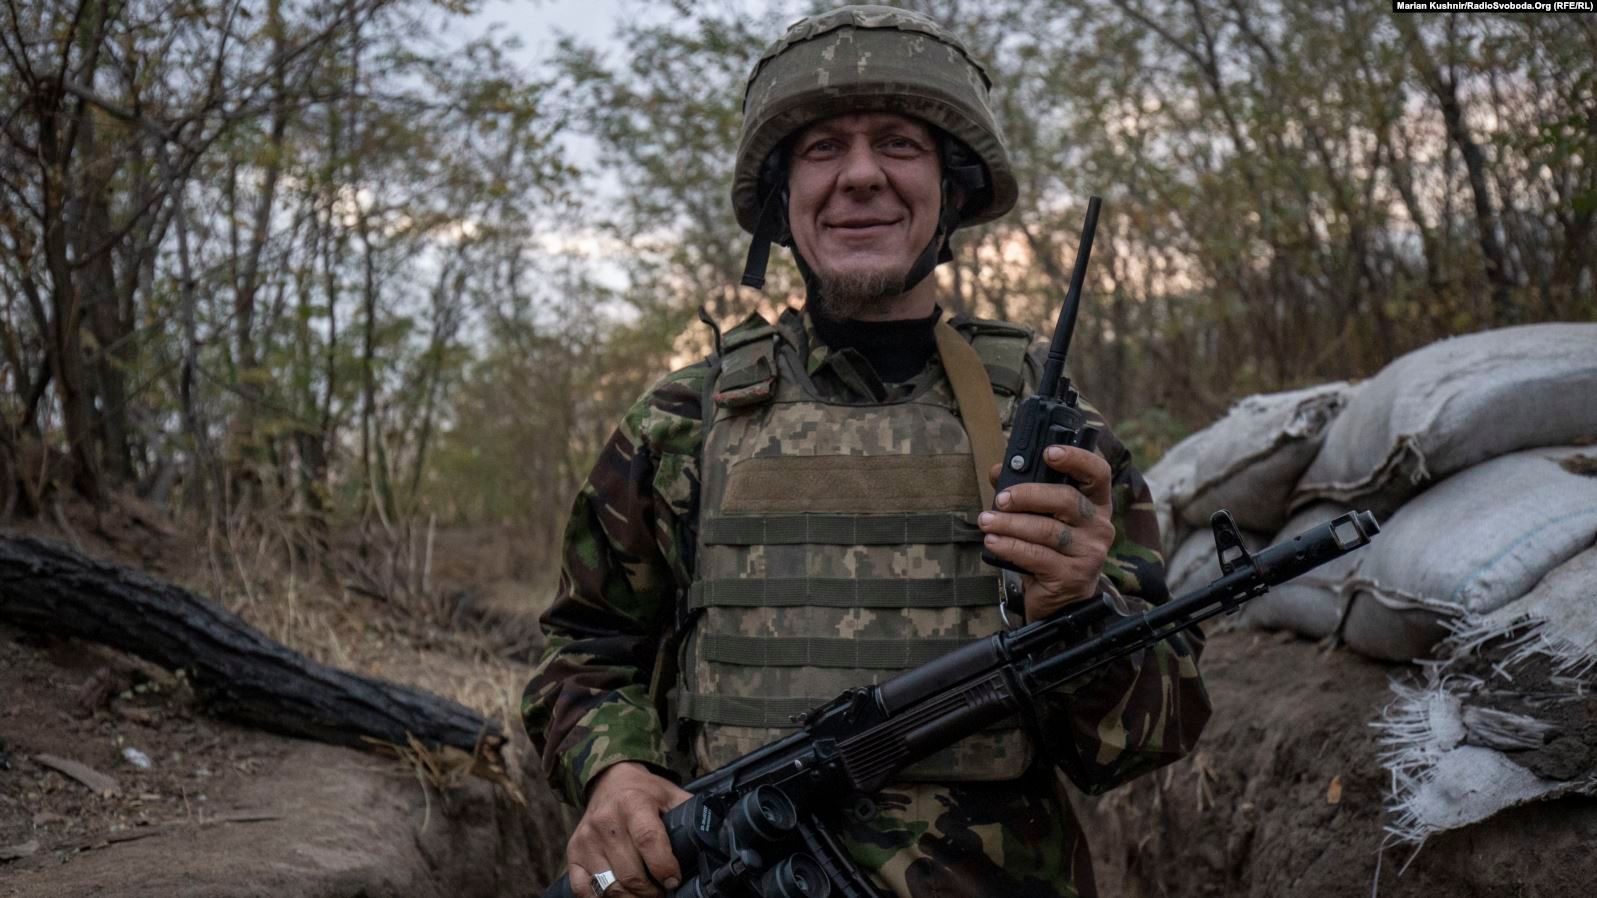 Як священник пішов на фронт захищати Україну – розповідь морського піхотинця - фото 62924